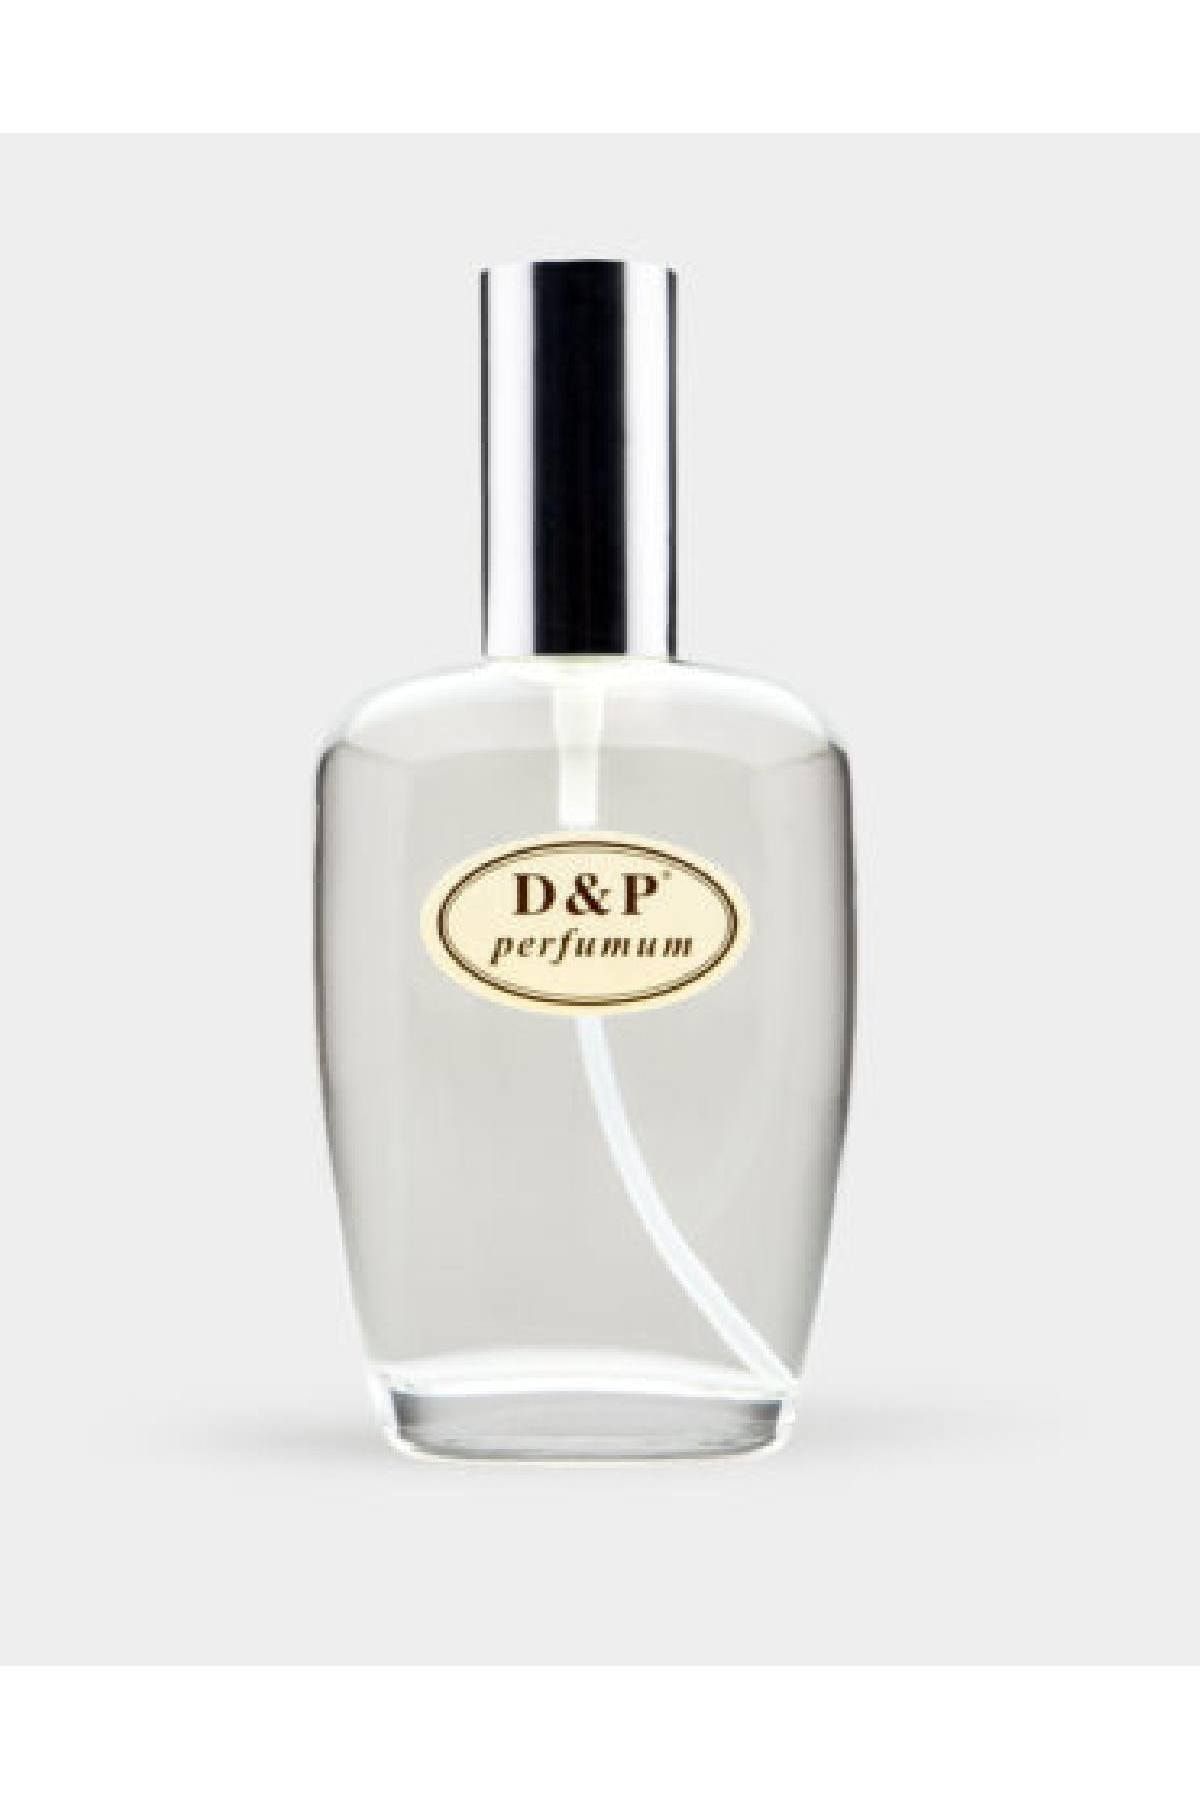 D&P Perfumum H9 Erkek Parfüm Edp 100 ml